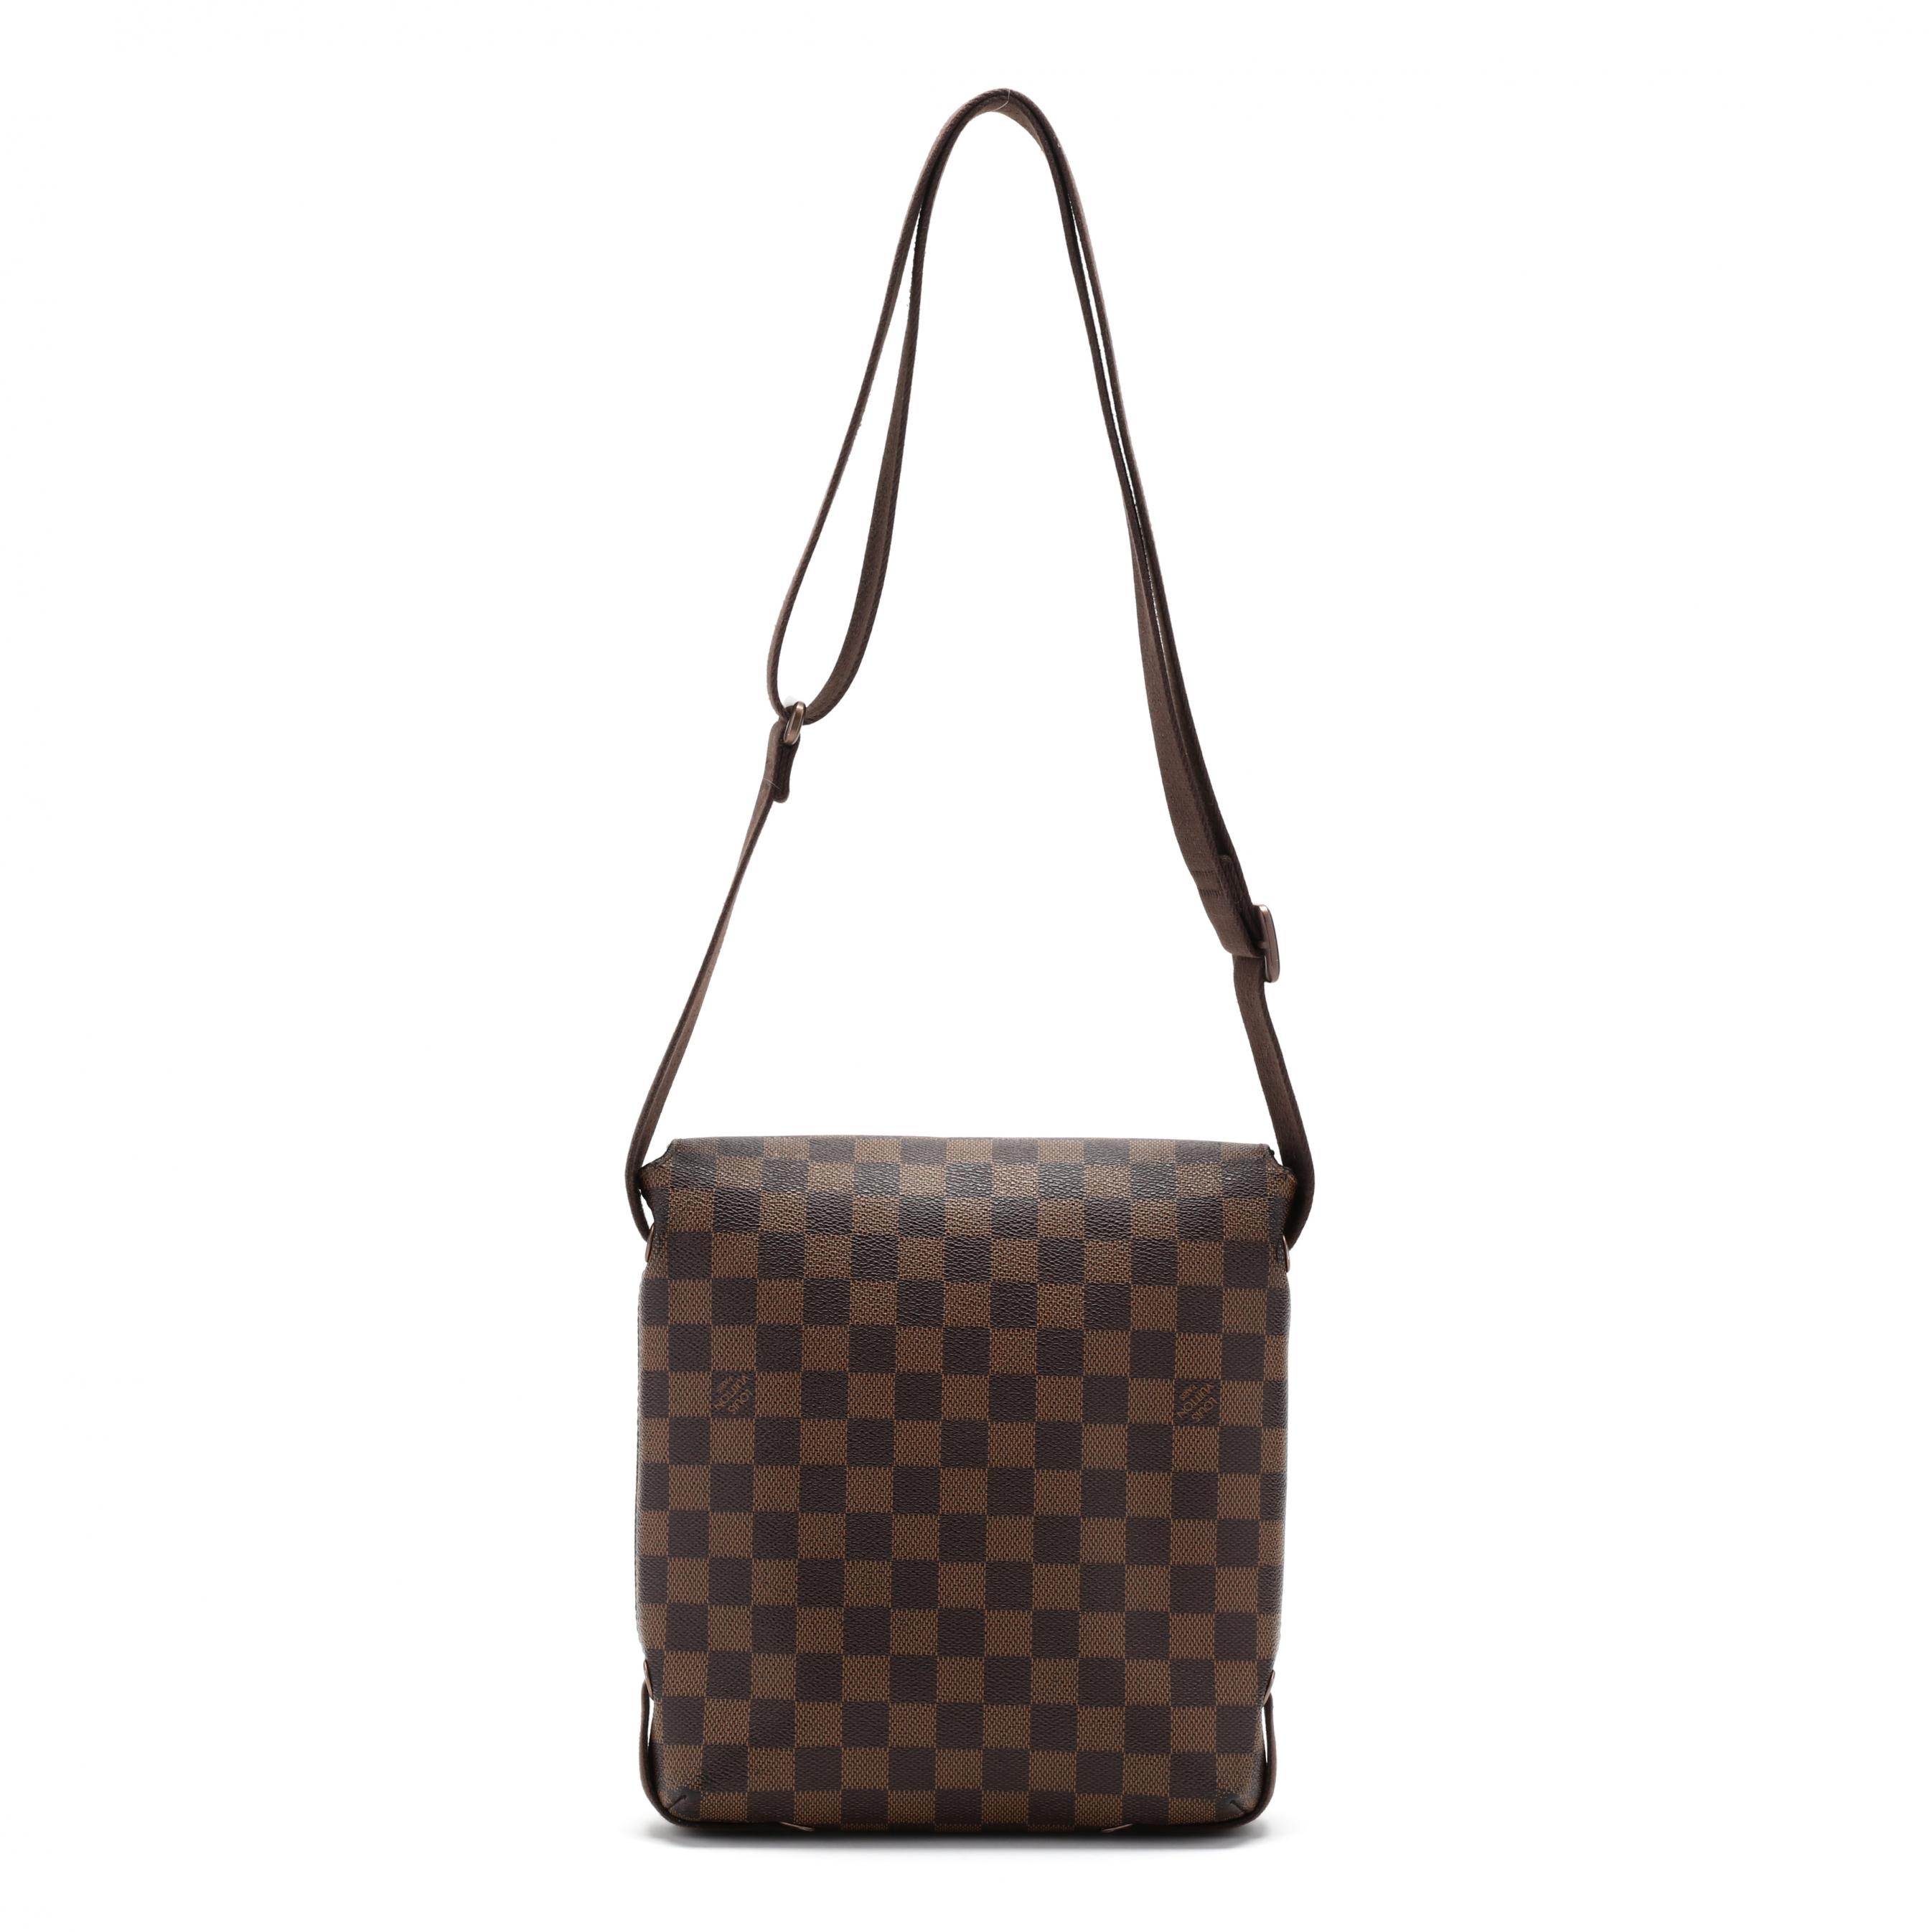 Sold at Auction: Louis Vuitton, LOUIS VUITTON shoulder bag SALSA PM.